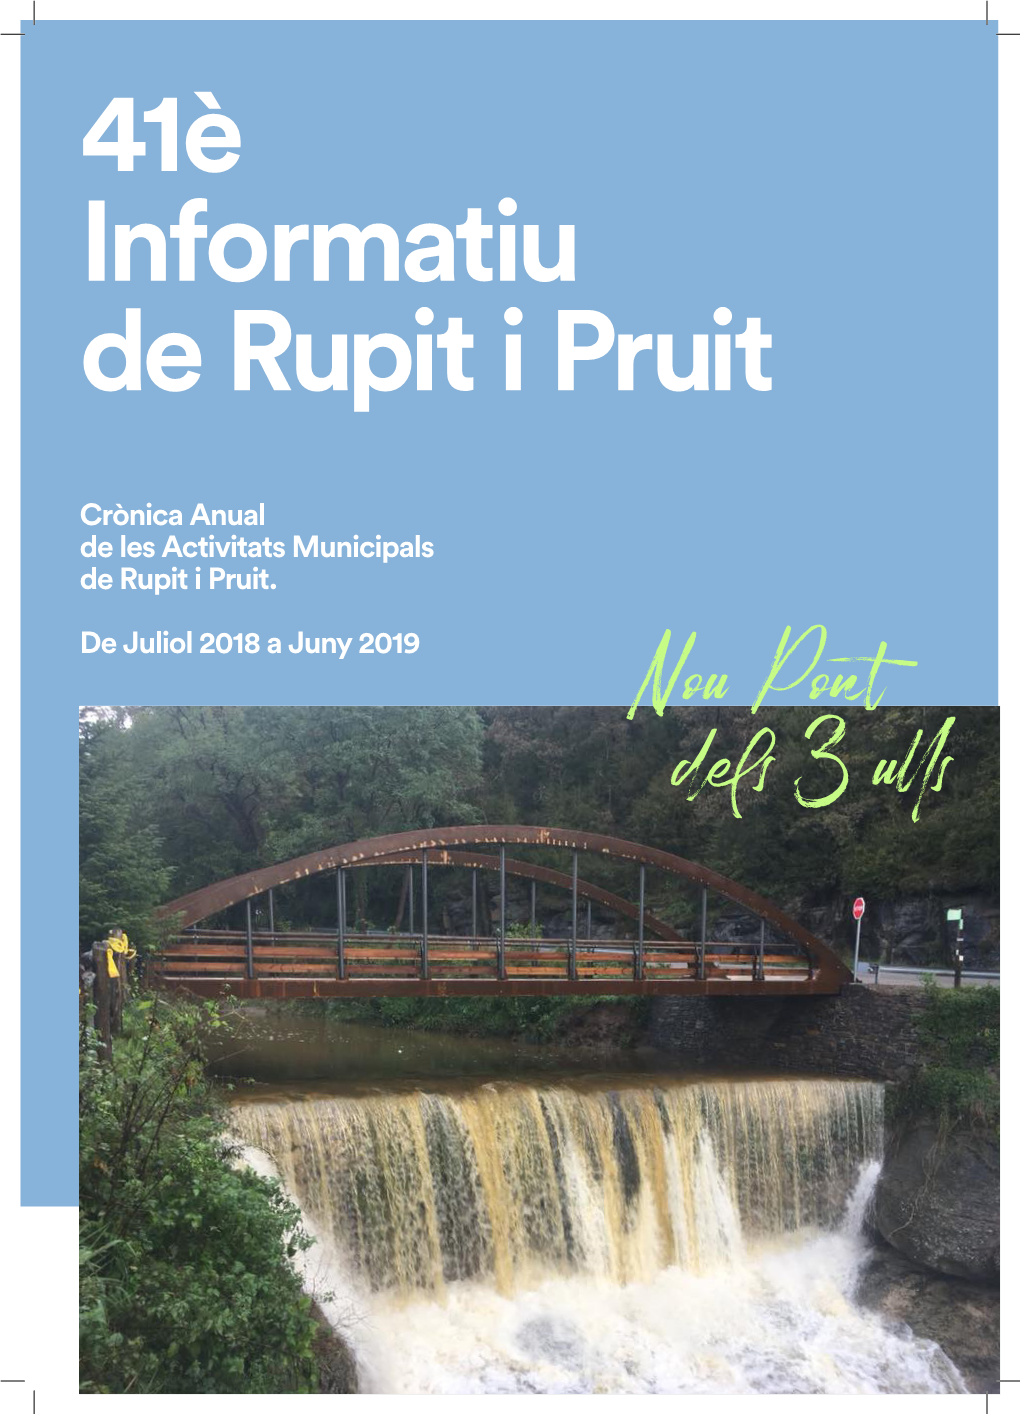 Crònica Anual De Les Activitats Municipals De Rupit I Pruit. De Juliol 2018 a Juny 2019 Nou Pont Dels 3 Ulls a La Maria Rosa